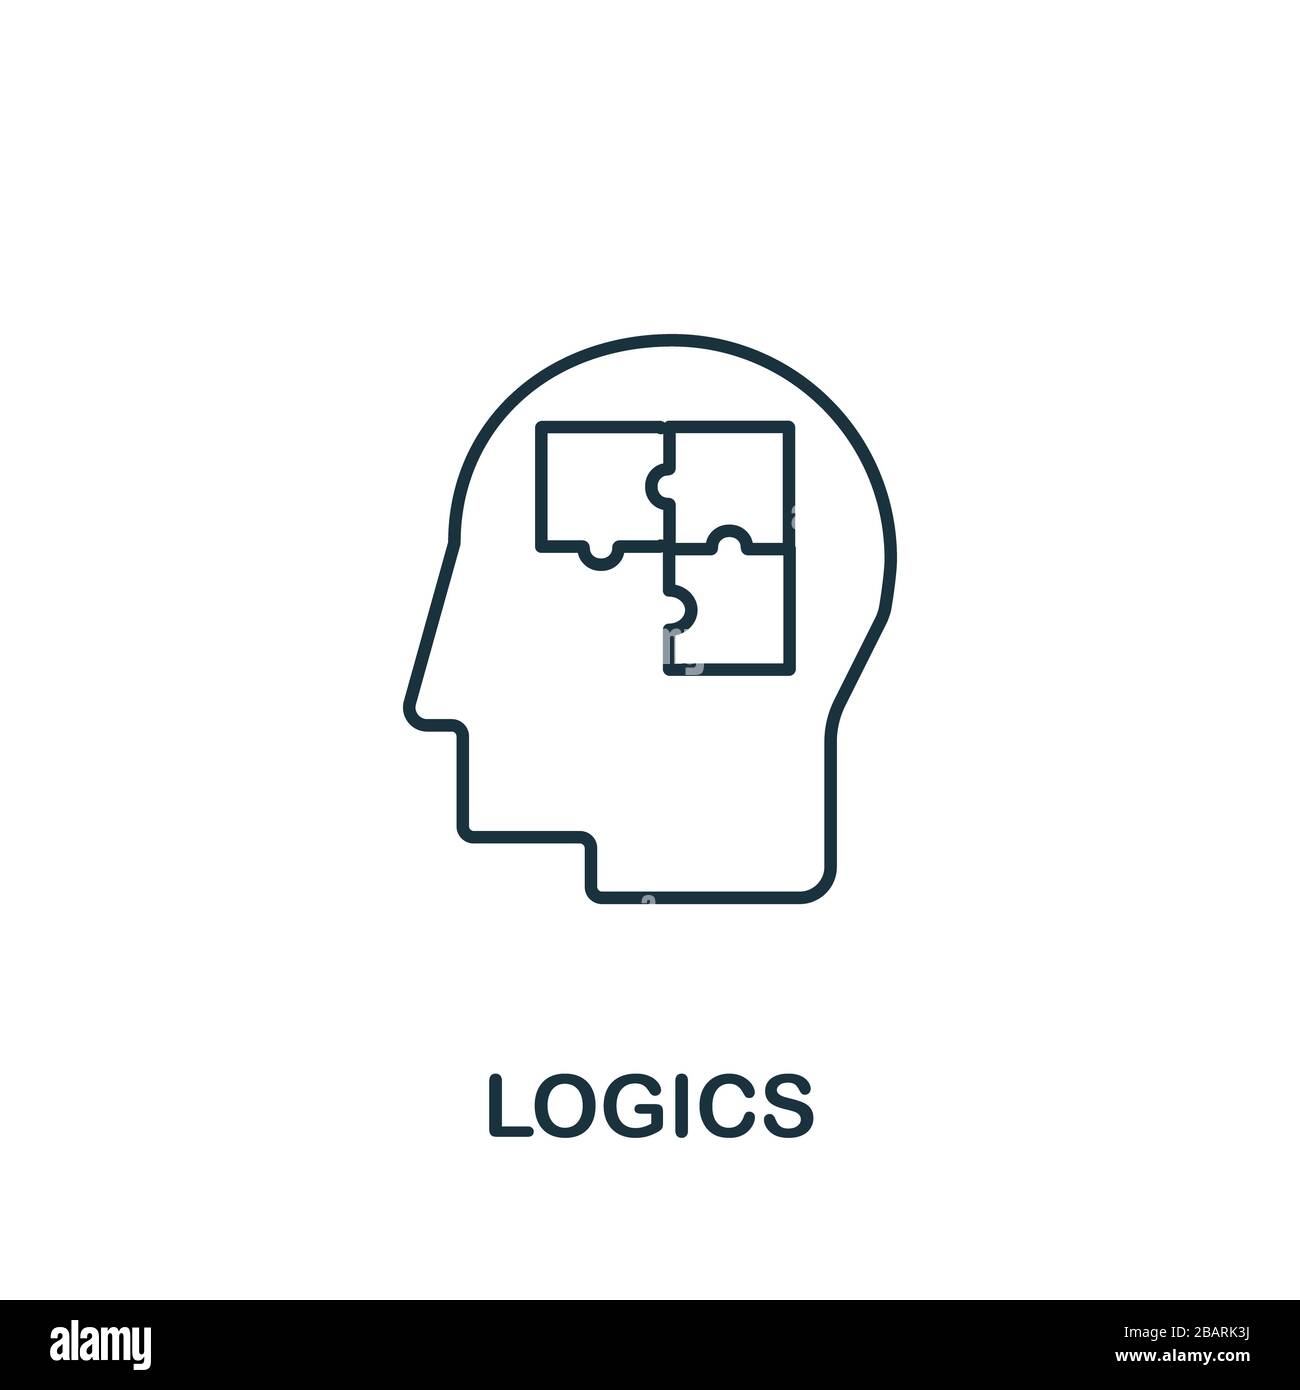 Icône logique de la collection scientifique. Symbole de logique d'élément de ligne simple pour les modèles, la conception Web et les infographies Banque D'Images